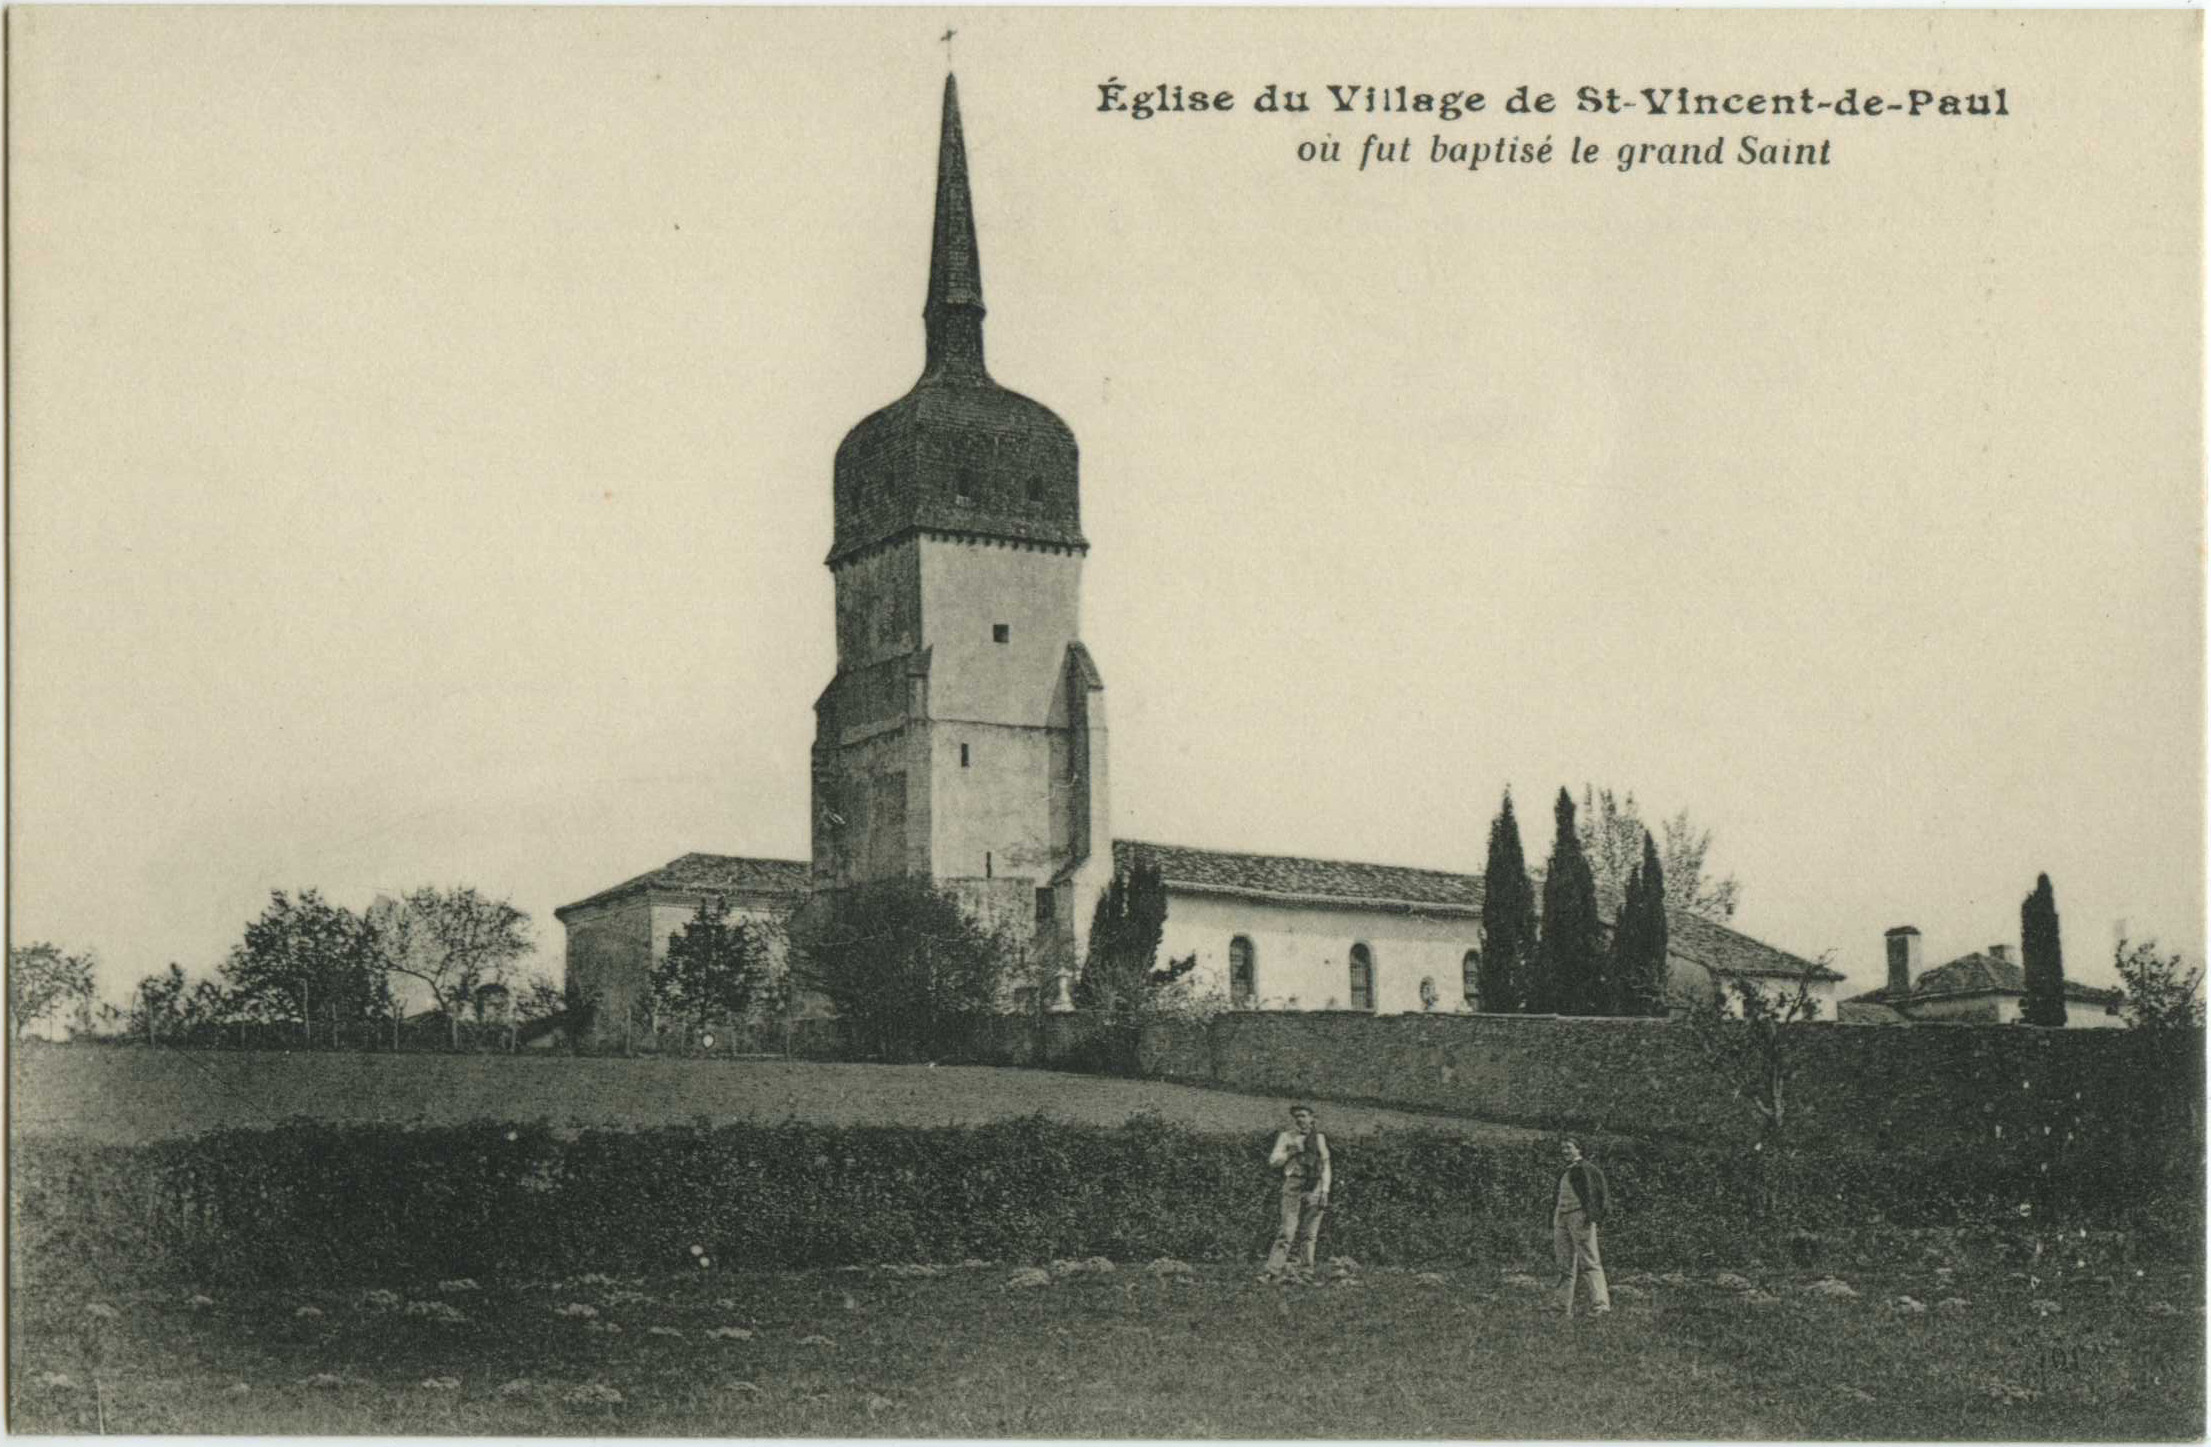 Saint-Vincent-de-Paul - Église du Village de St-Vincent-de-Paul où fut baptisé le grand Saint